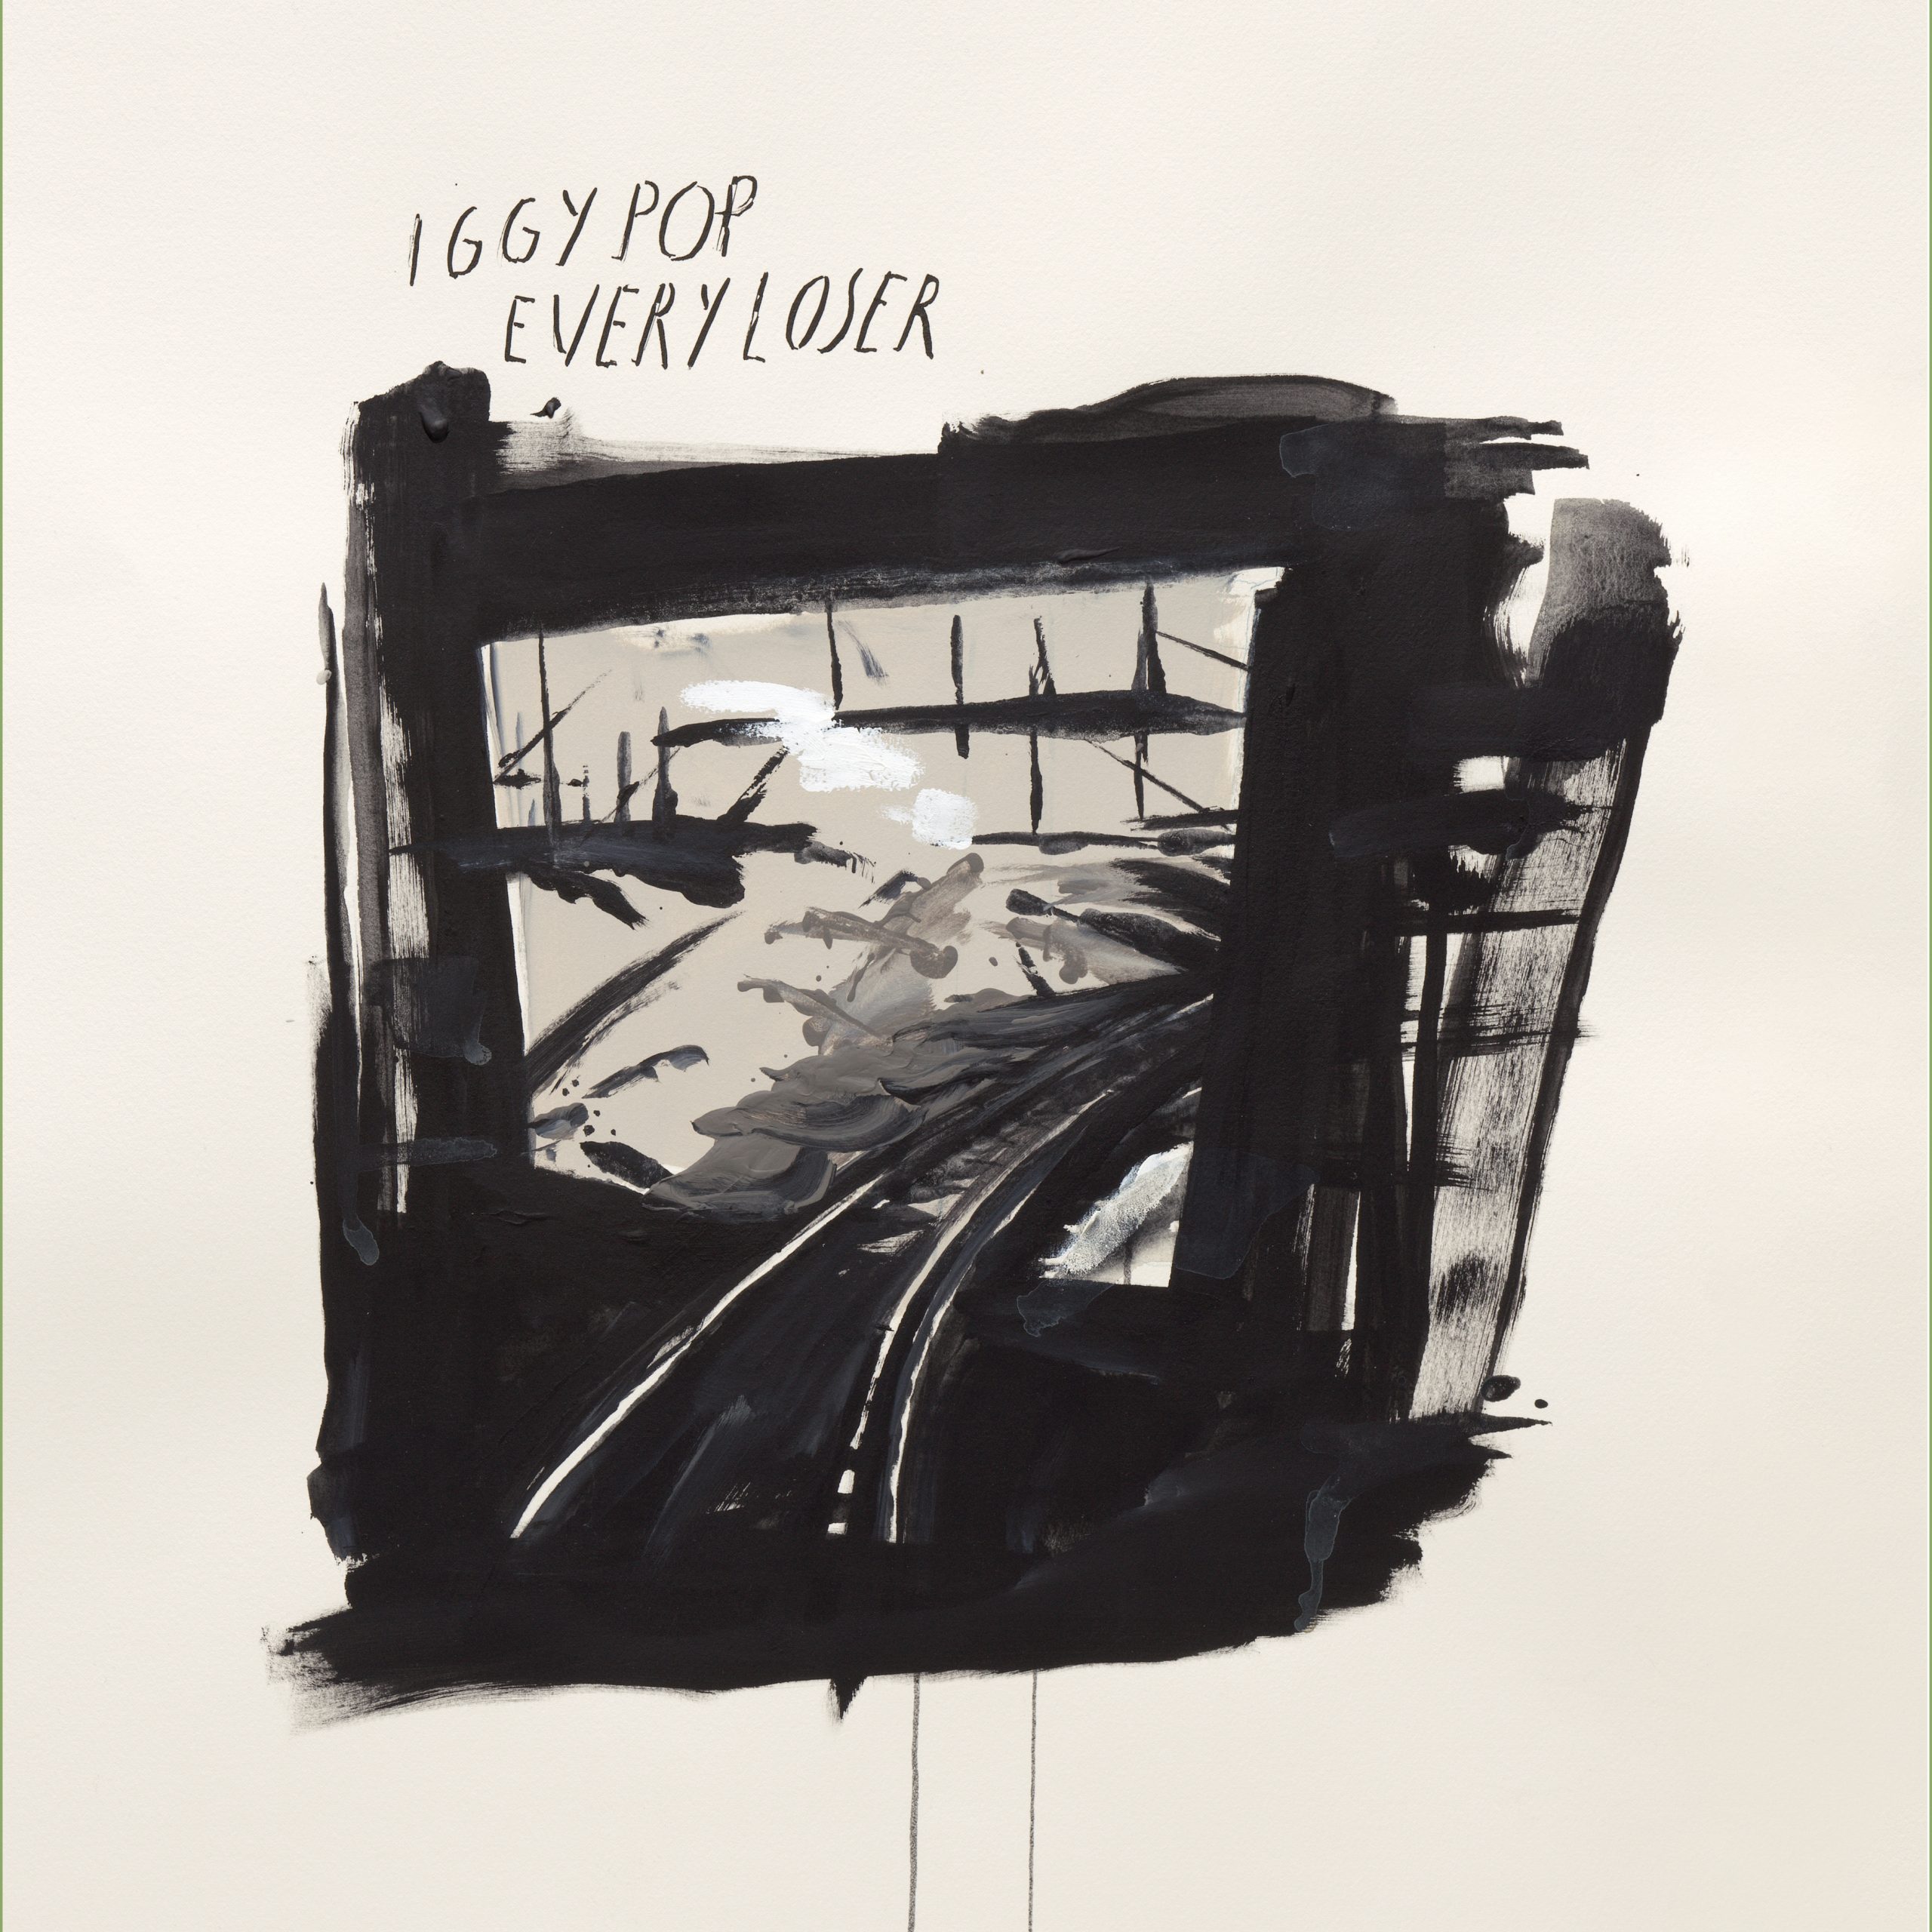 audio review : Every Loser ( album ) ... Iggy Pop